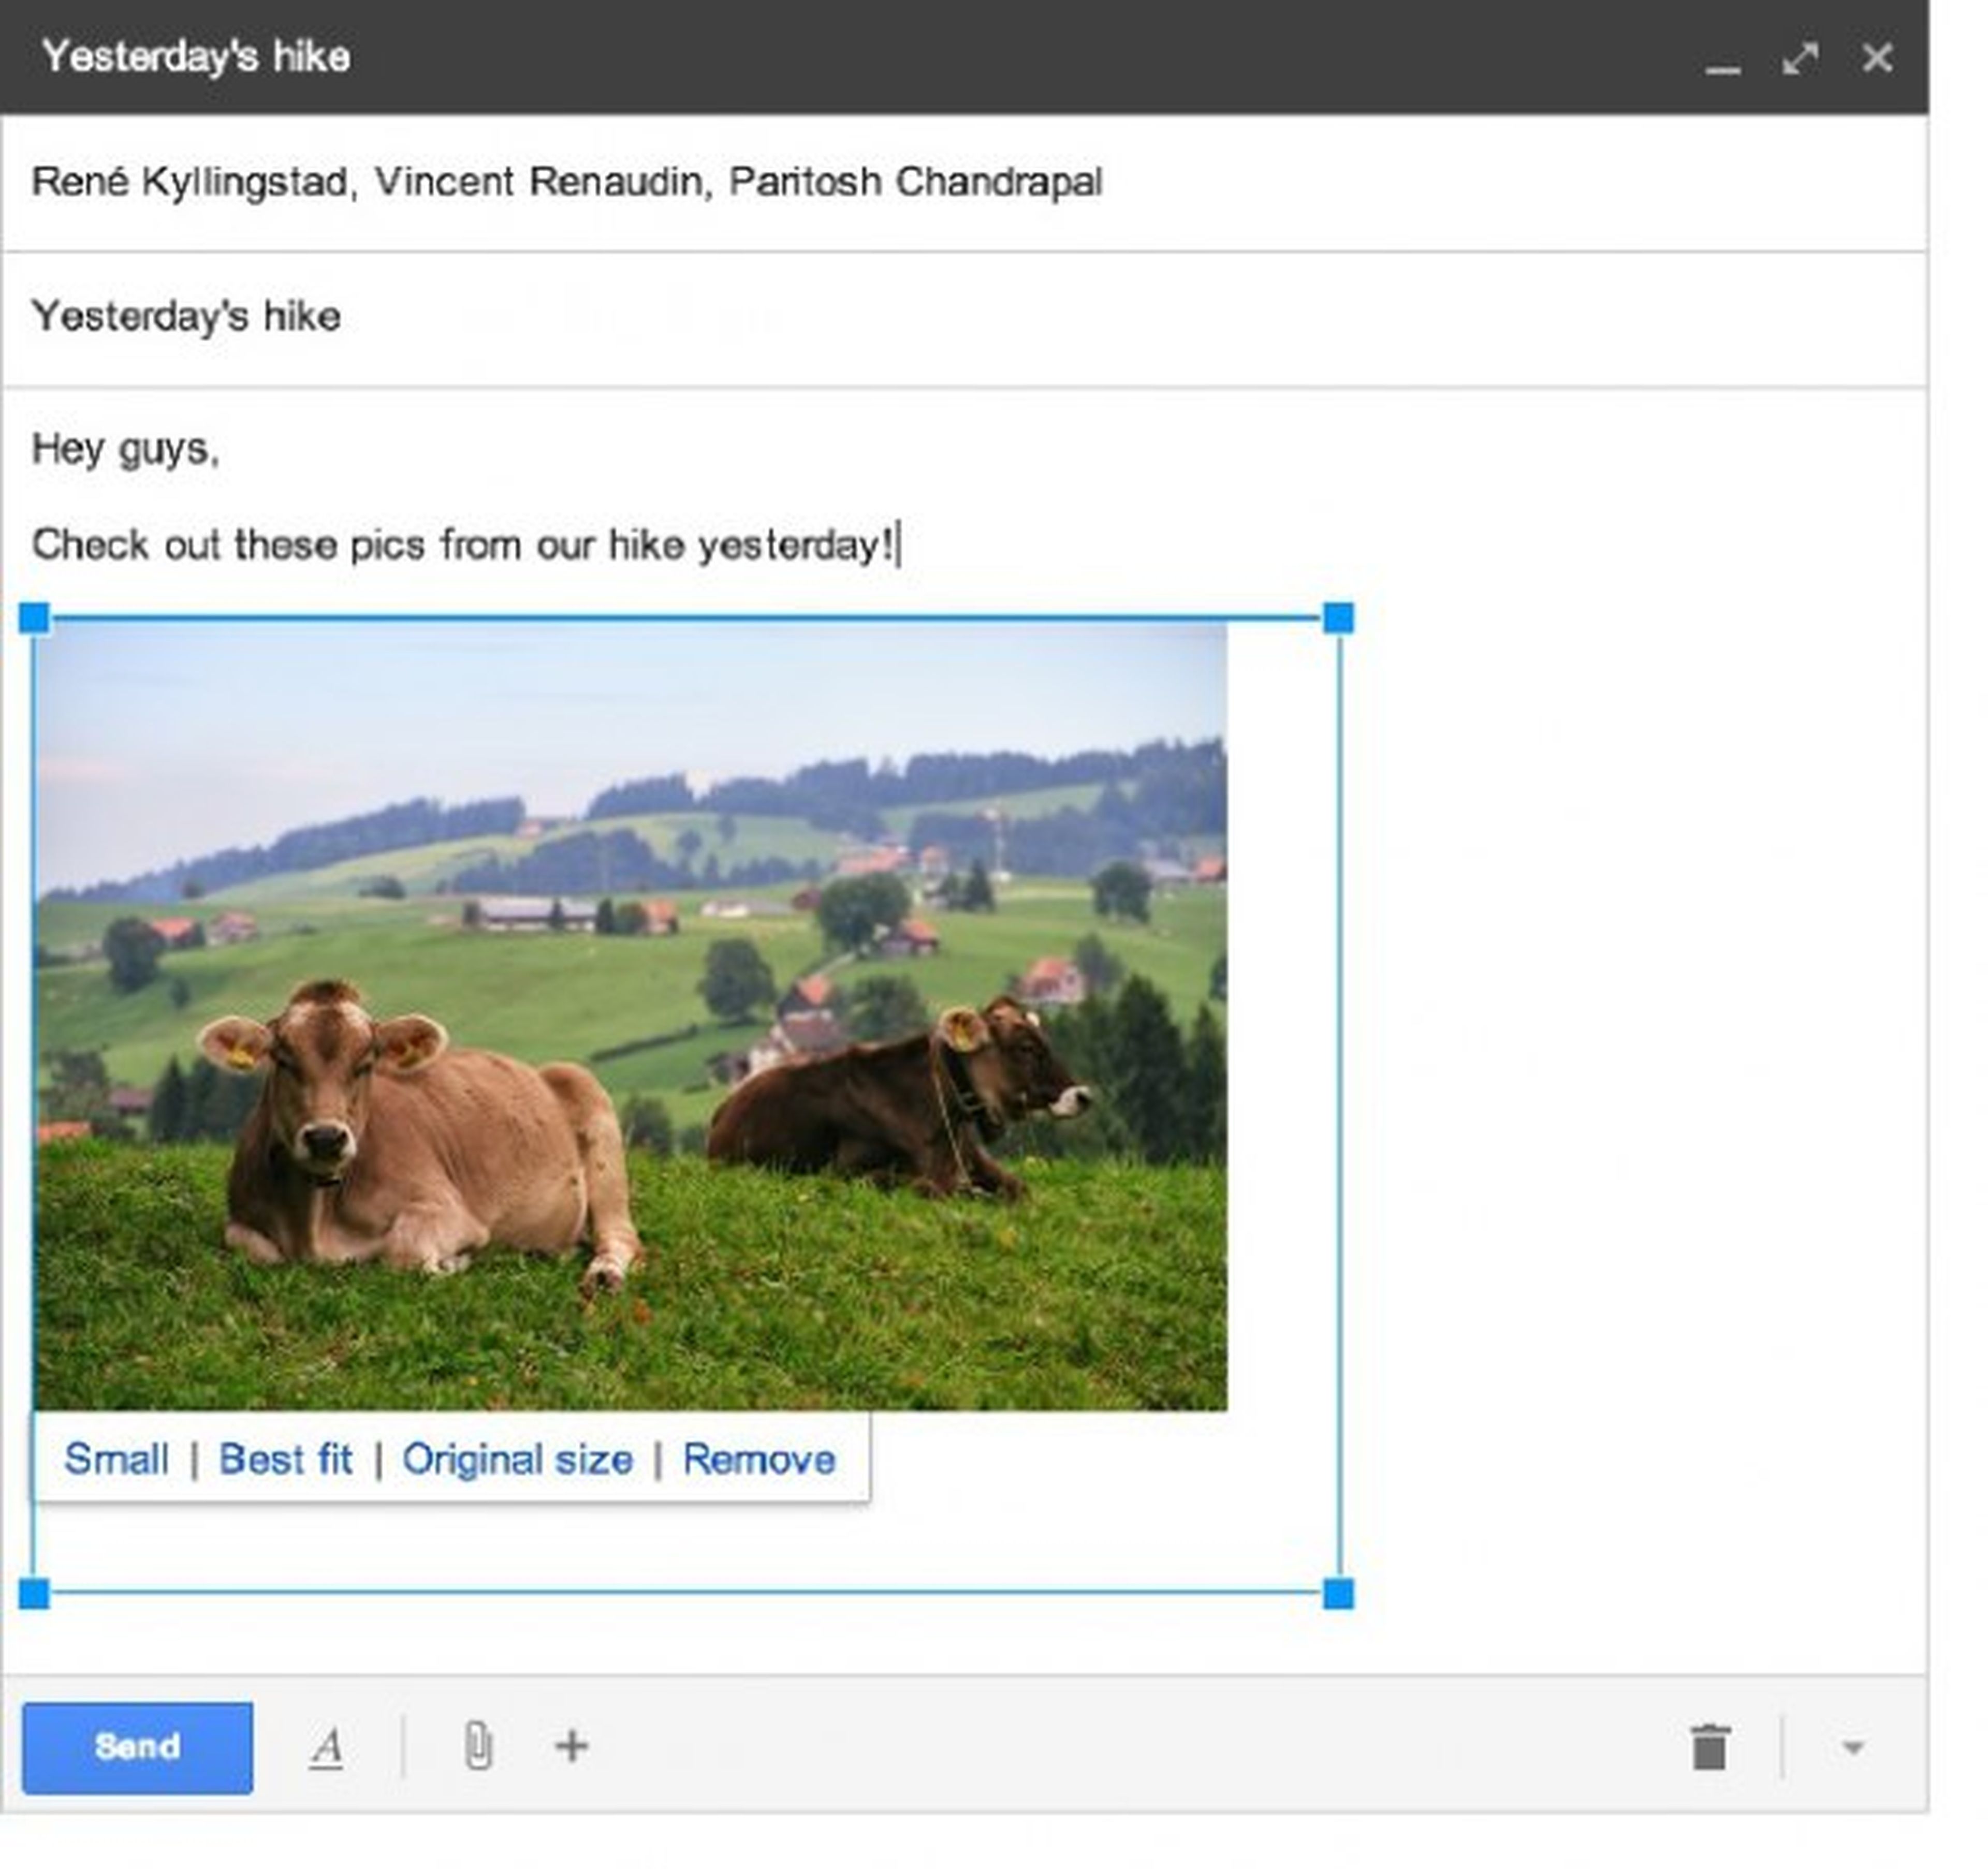 Gmail tiene nuevo acceso a las fotografías desde Google +